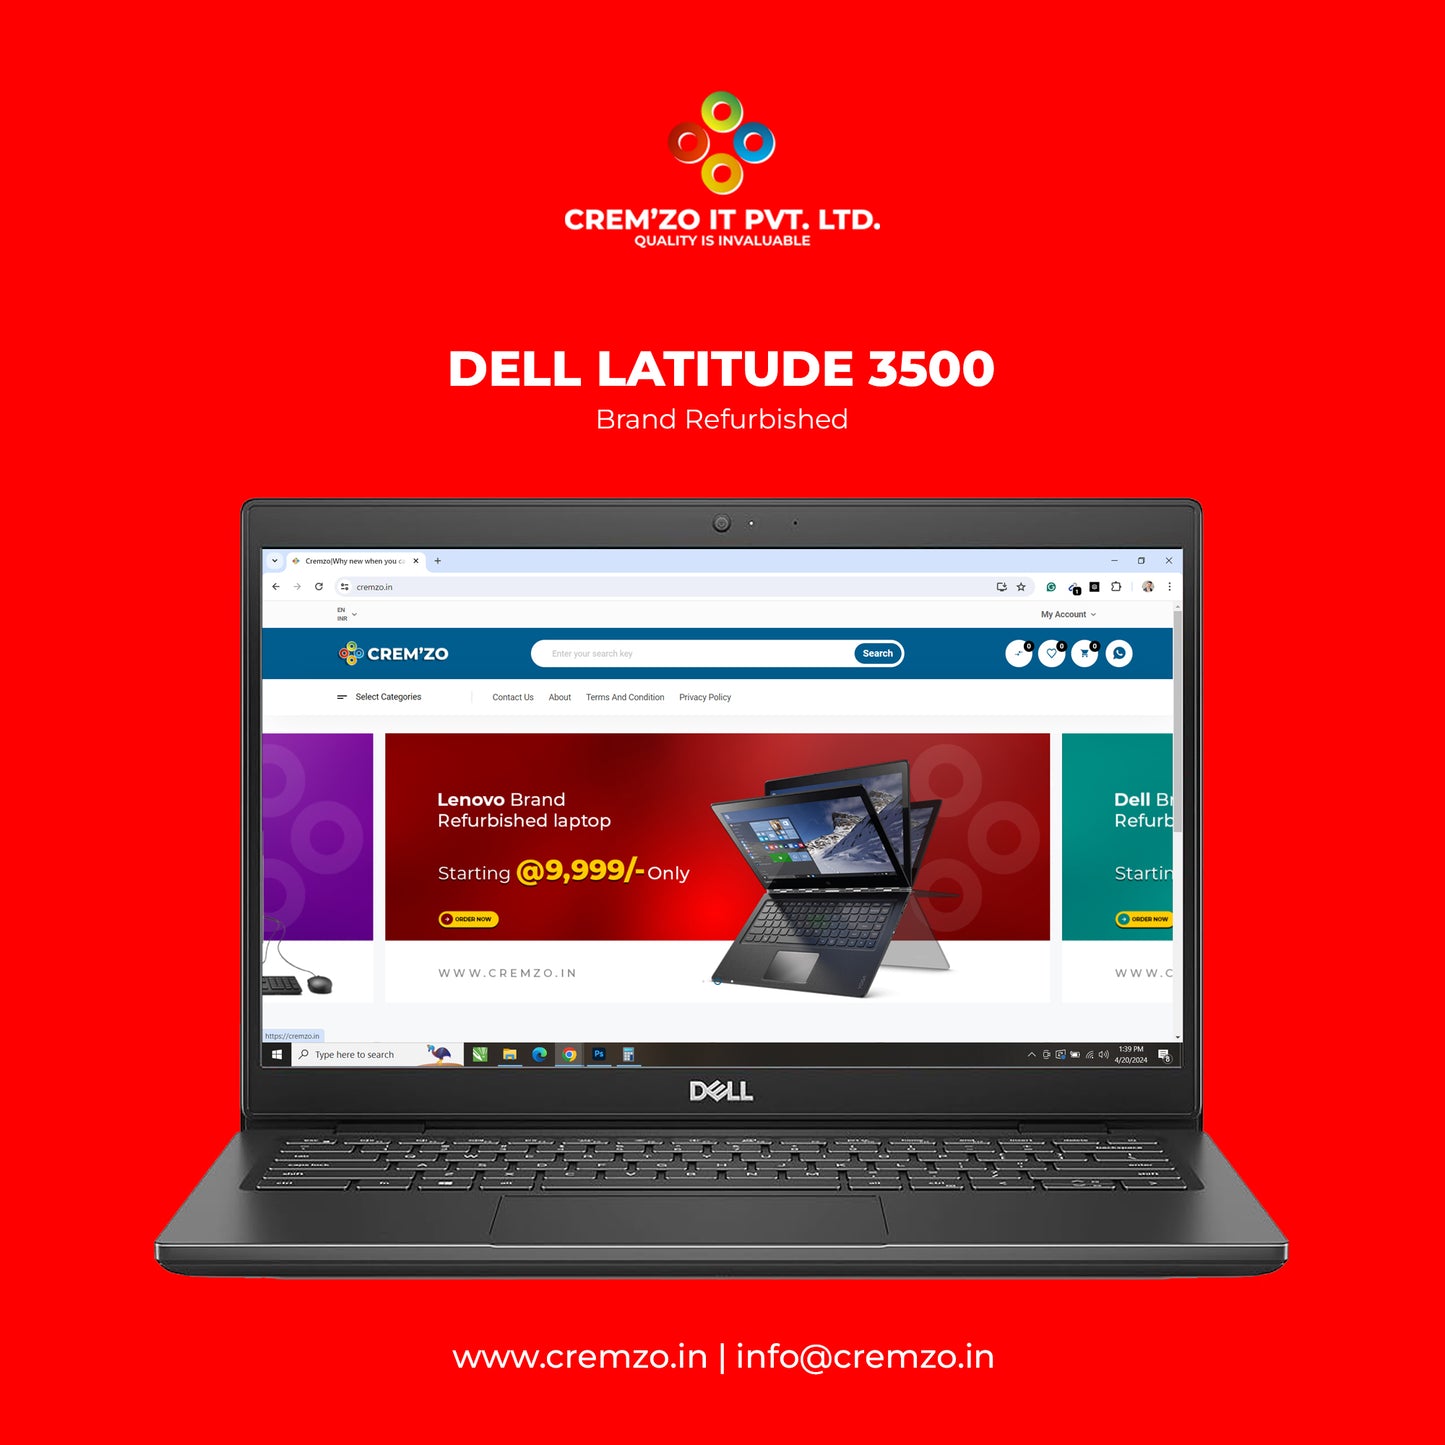 Dell Latitude 3500 Business Series